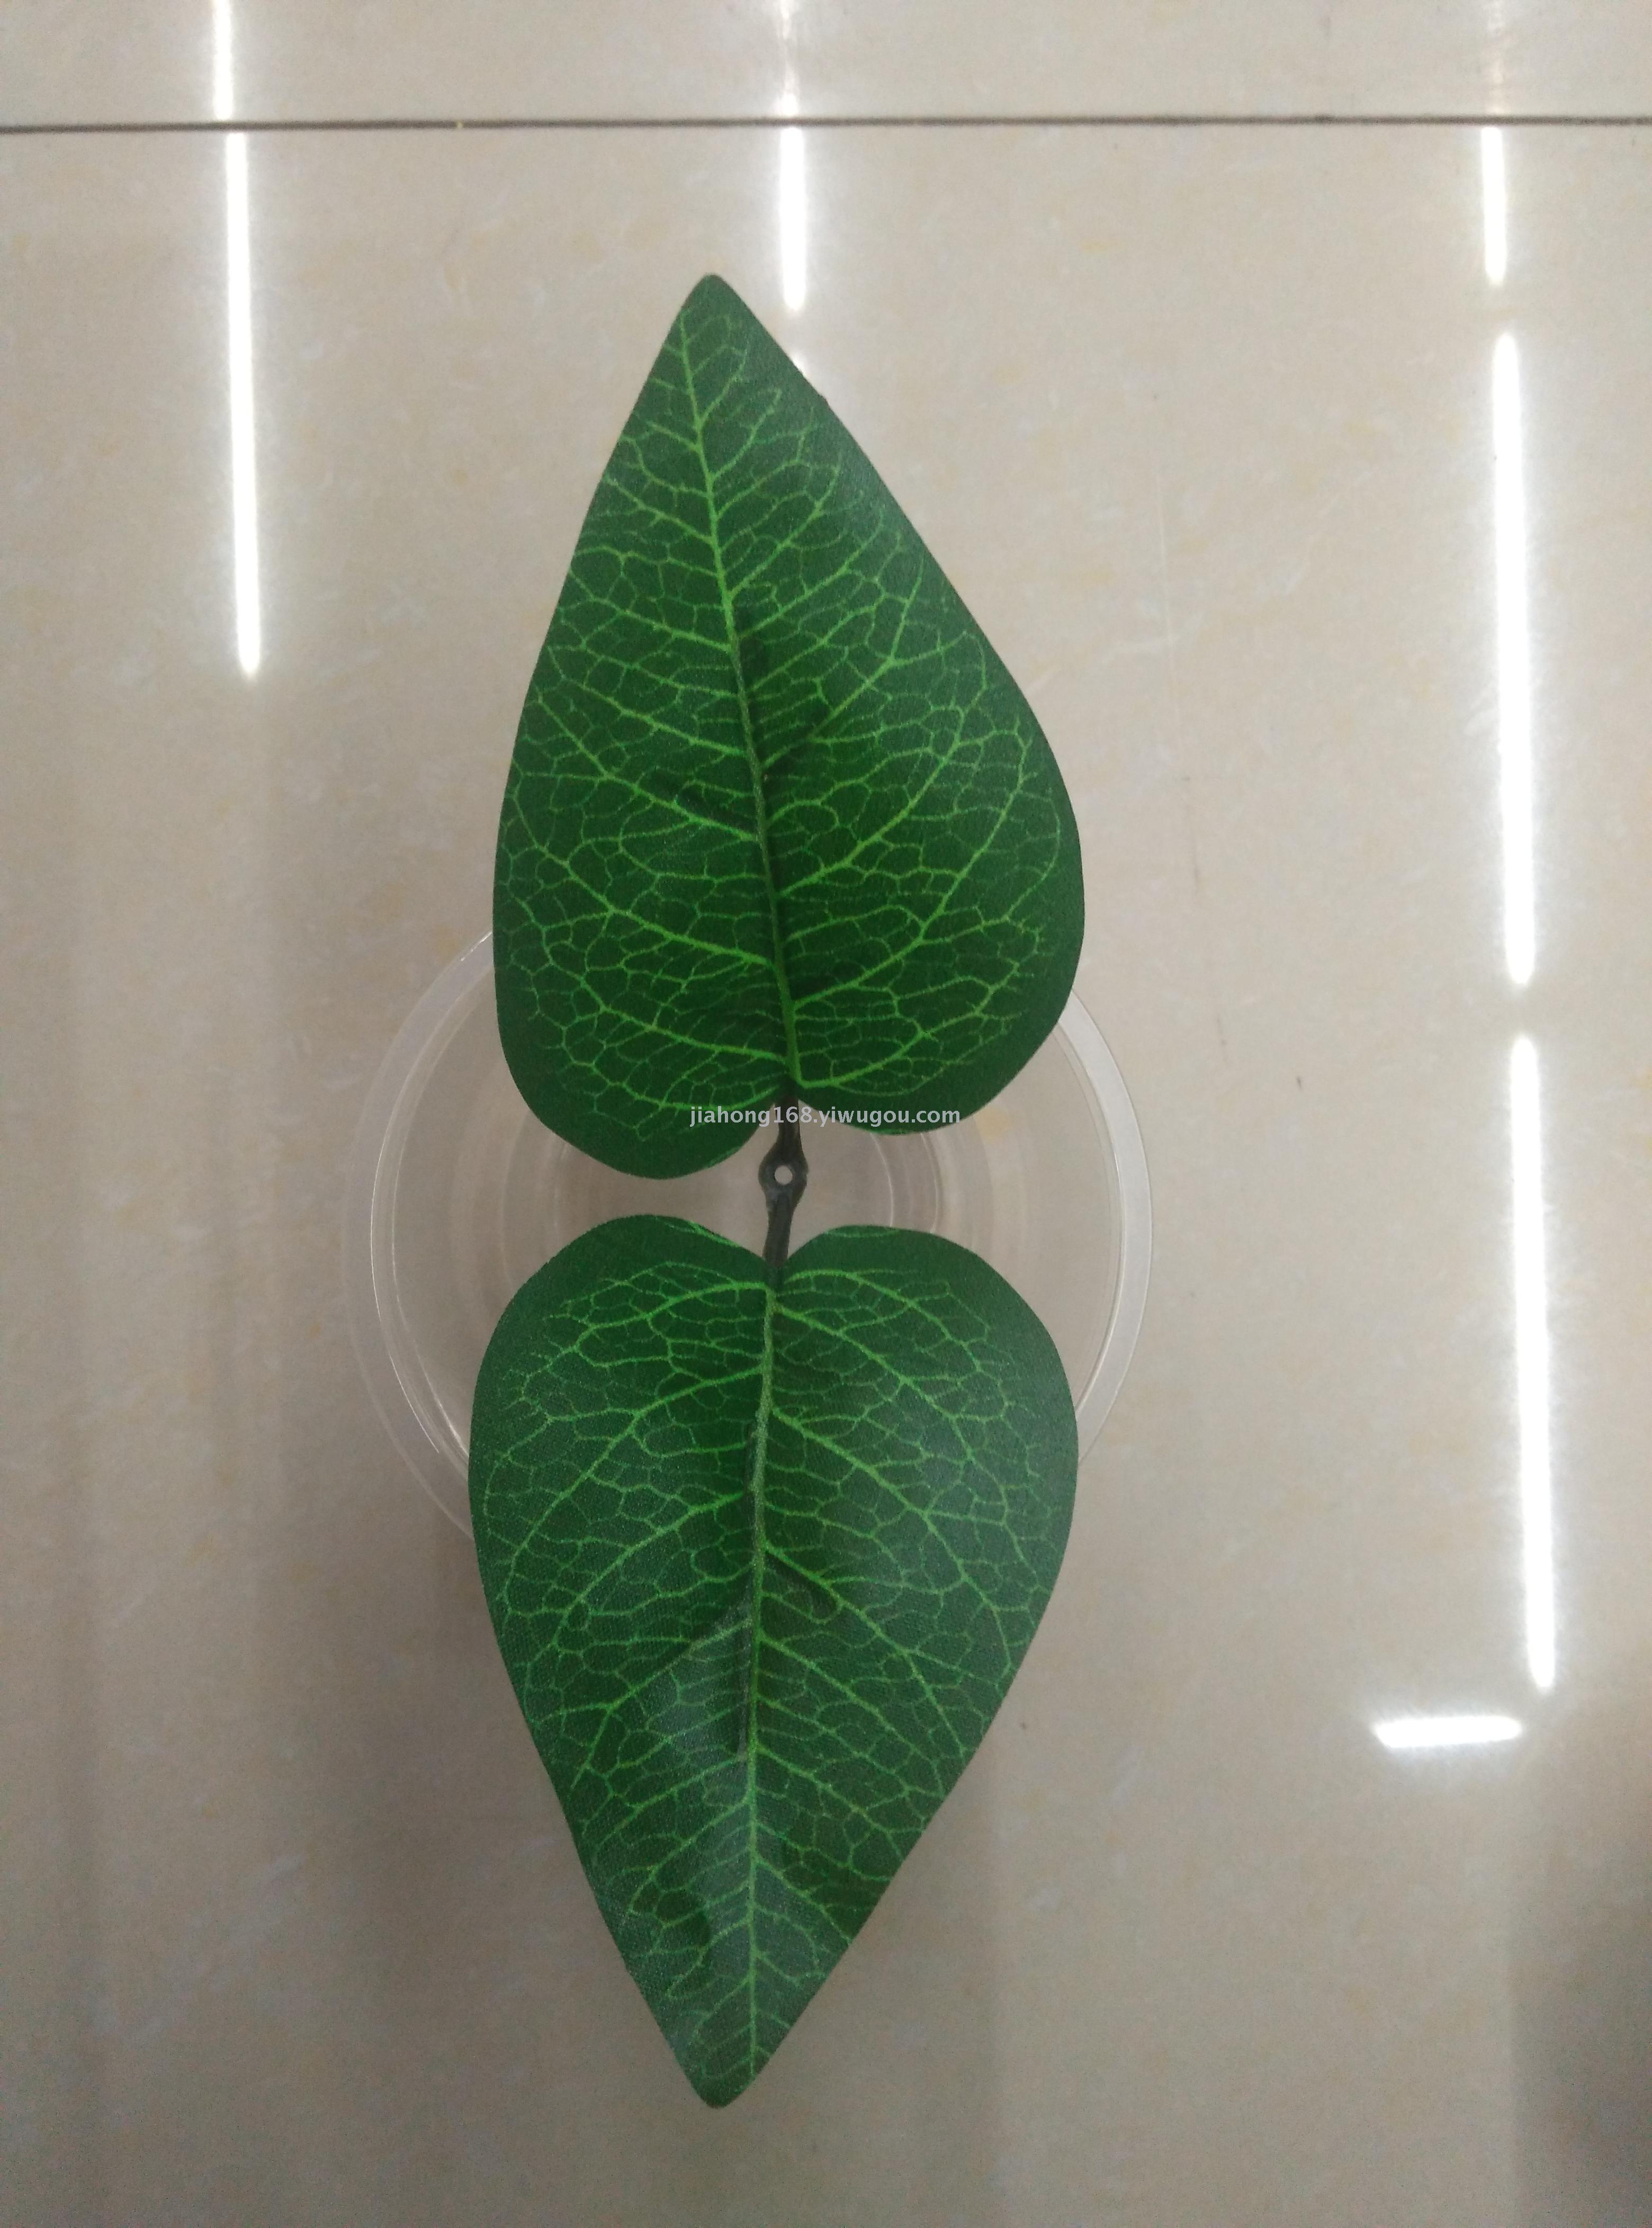 野生槟榔叶灌木的新鲜新绿色心形叶子。高清摄影大图-千库网